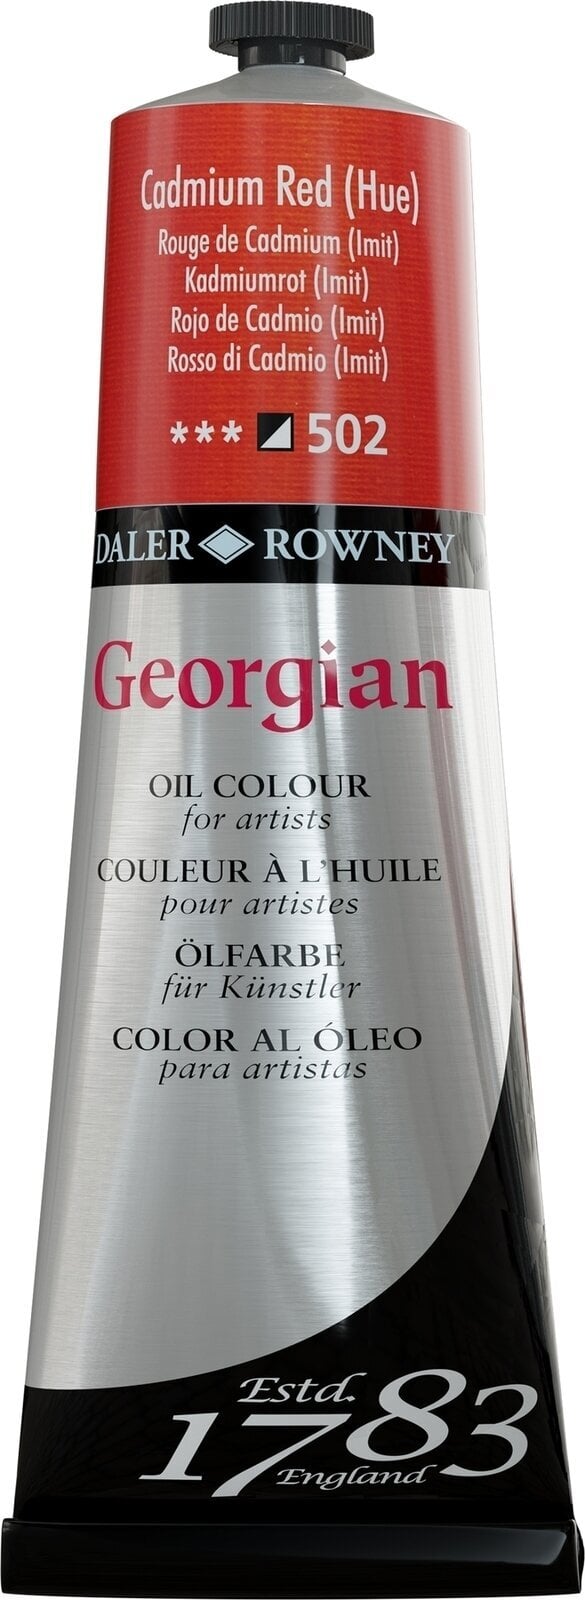 Tempera ad olio Daler Rowney Georgian Pittura a olio Cadmium Red Hue 225 ml 1 pz